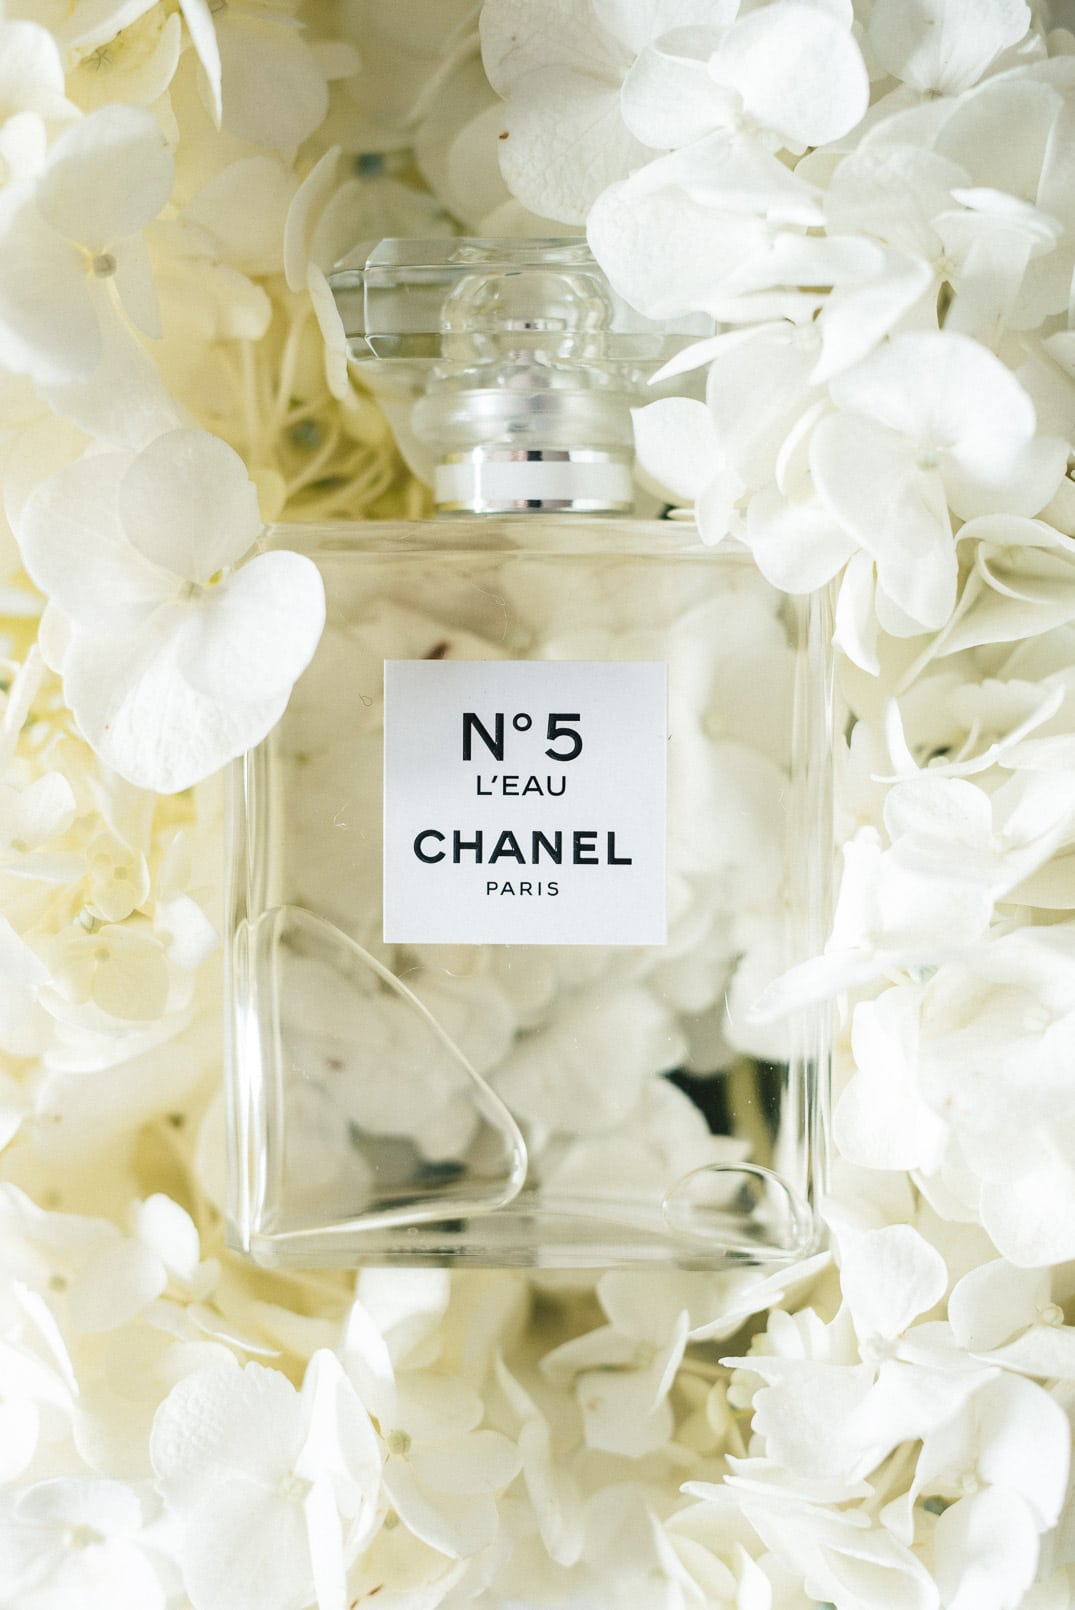 Chanel No 5 L'eau Review - Best Flanker Perfume Since Eau Premiere?  (Fragrance Mini-Reviews 2017) 